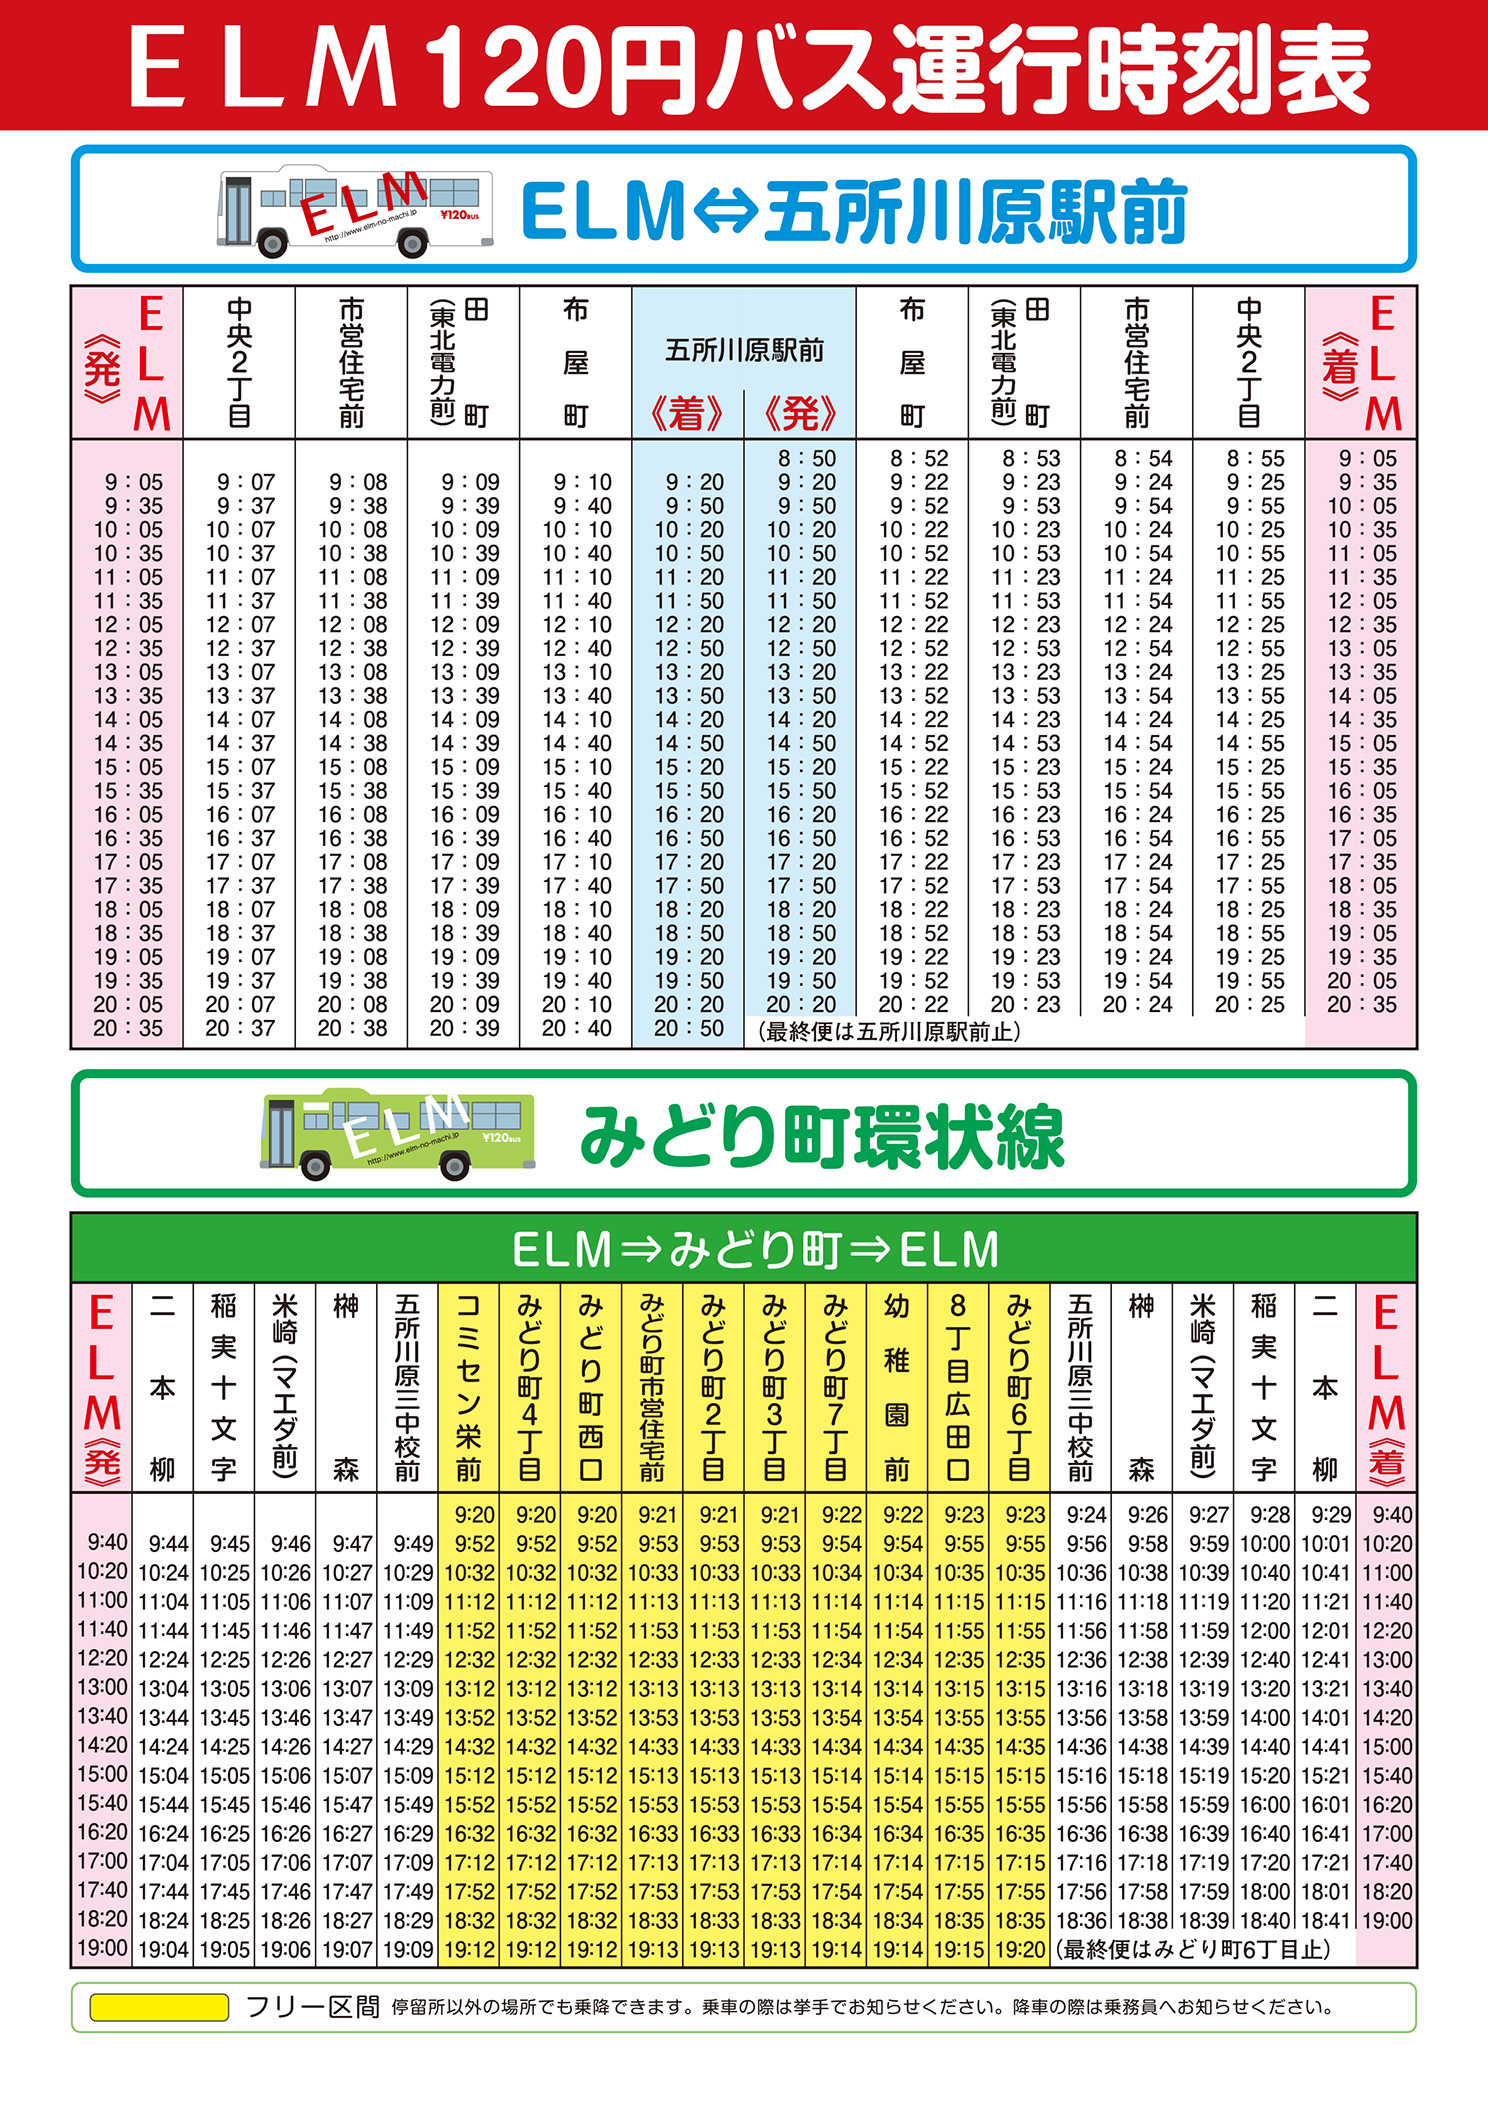 Elm 1円バス時刻表